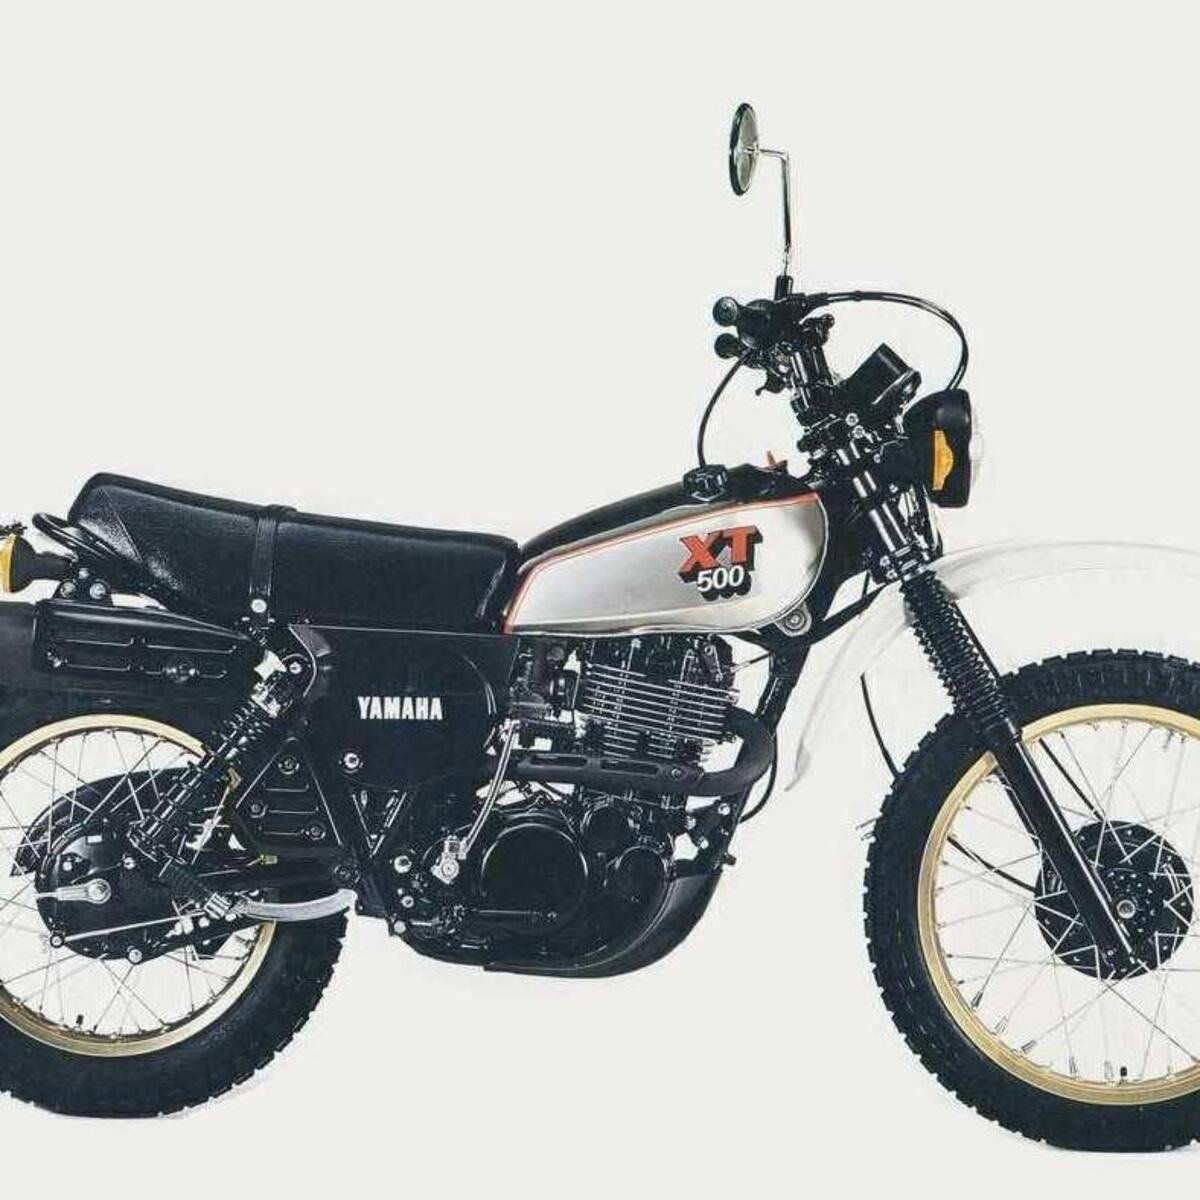 Yamaha XT 500 (1982 - 89)